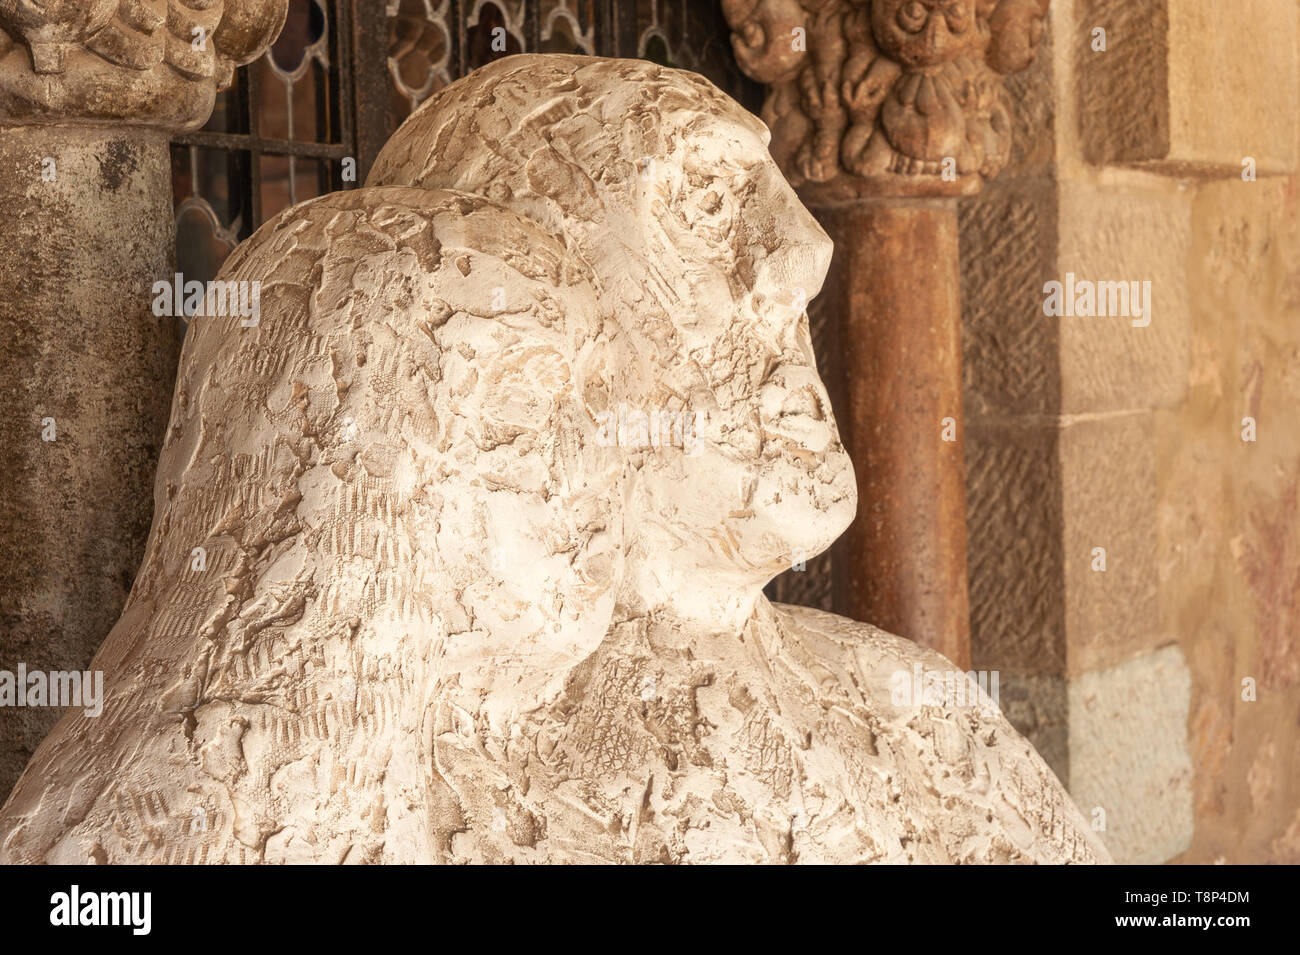 Sculpture at the Chateau de la Napoule, Mandelieu-la-Napoule, Var, Provence-Alpes-Cote d`Azur, France, Europe Stock Photo